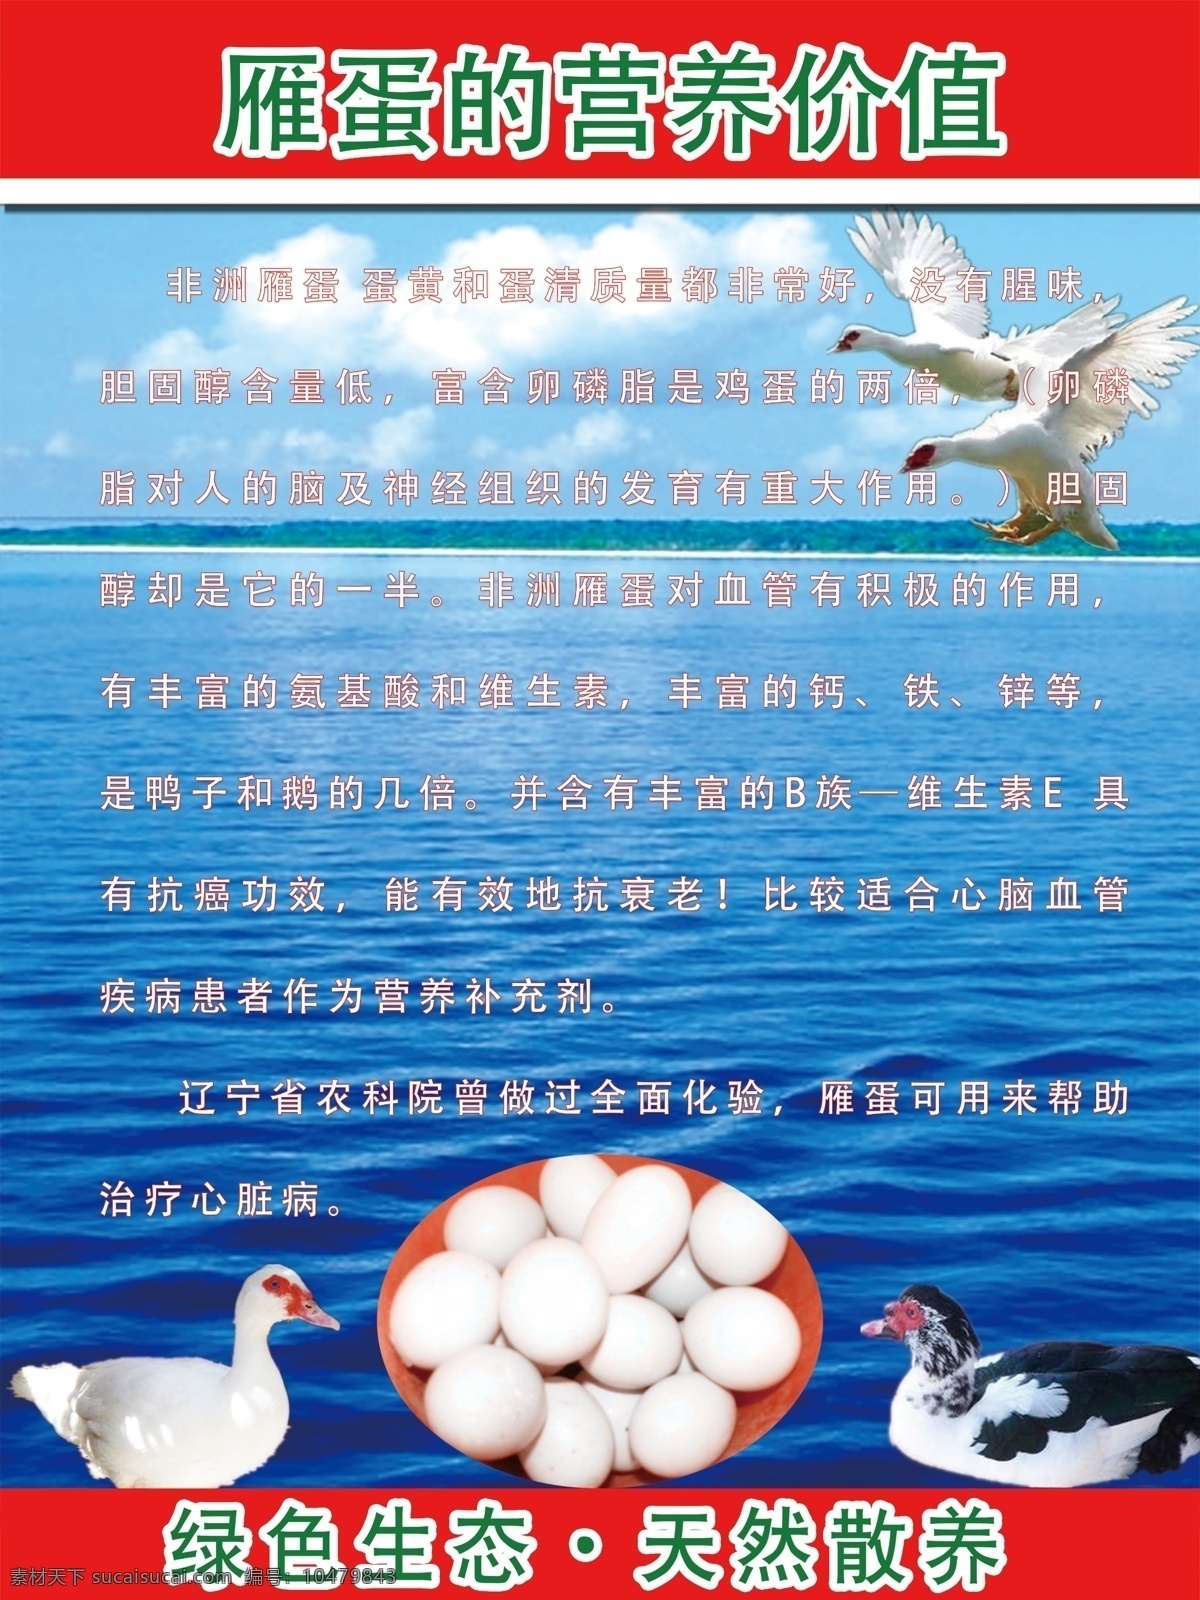 雁 蛋 营养 价值 雁蛋图 kt板 产品宣传 大雁蛋 设计图 室外广告设计